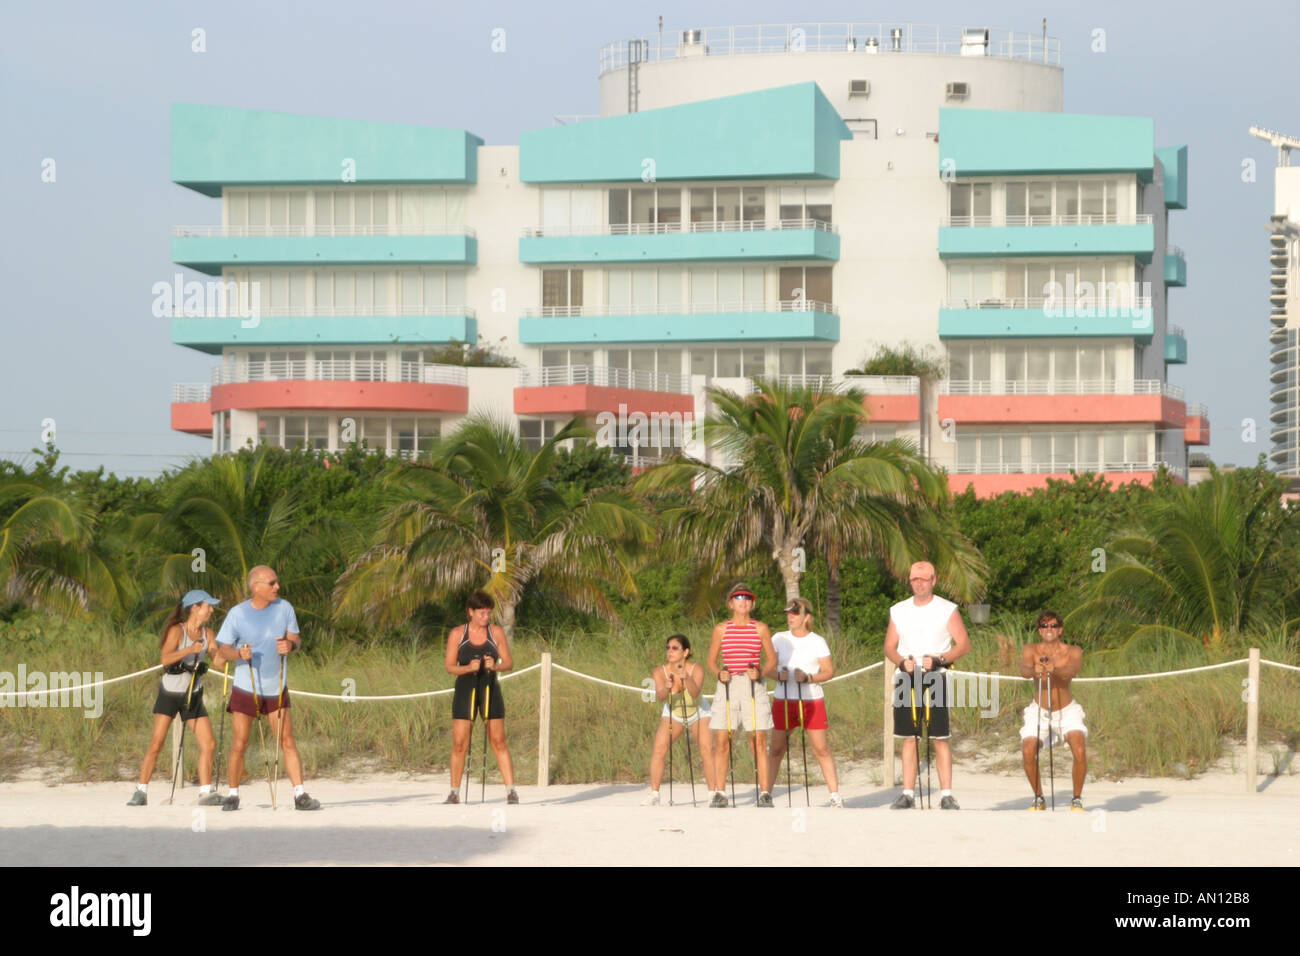 Miami Beach Florida,Atlantic Shore,rivage,côte,littoral,littoral,littoral,littoral,littoral,littoral,littoral,plage,ski pole exercice sur les plages publiques,sable,bains de soleil,vacances,condos,visito Banque D'Images